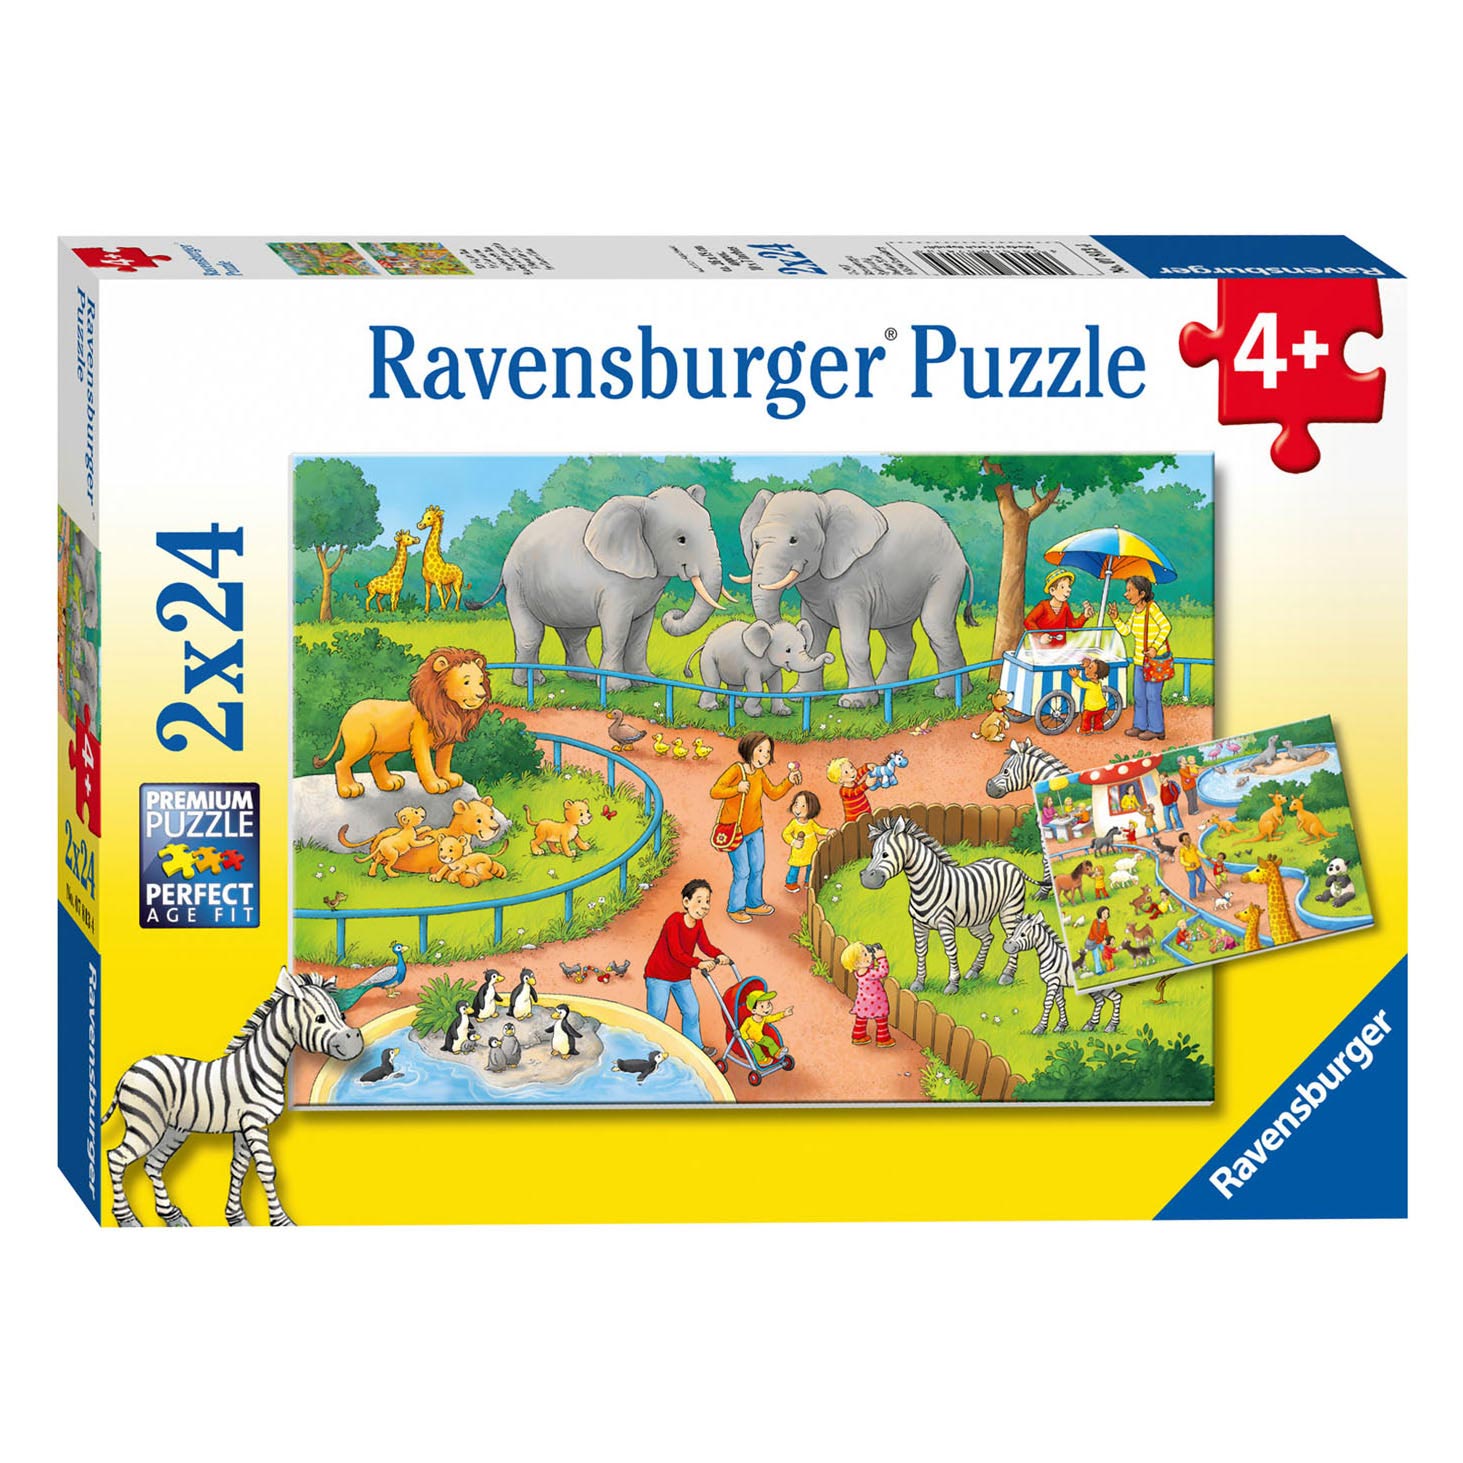 Ravensburger Puzzle Une journée au zoo, 2x24pcs.